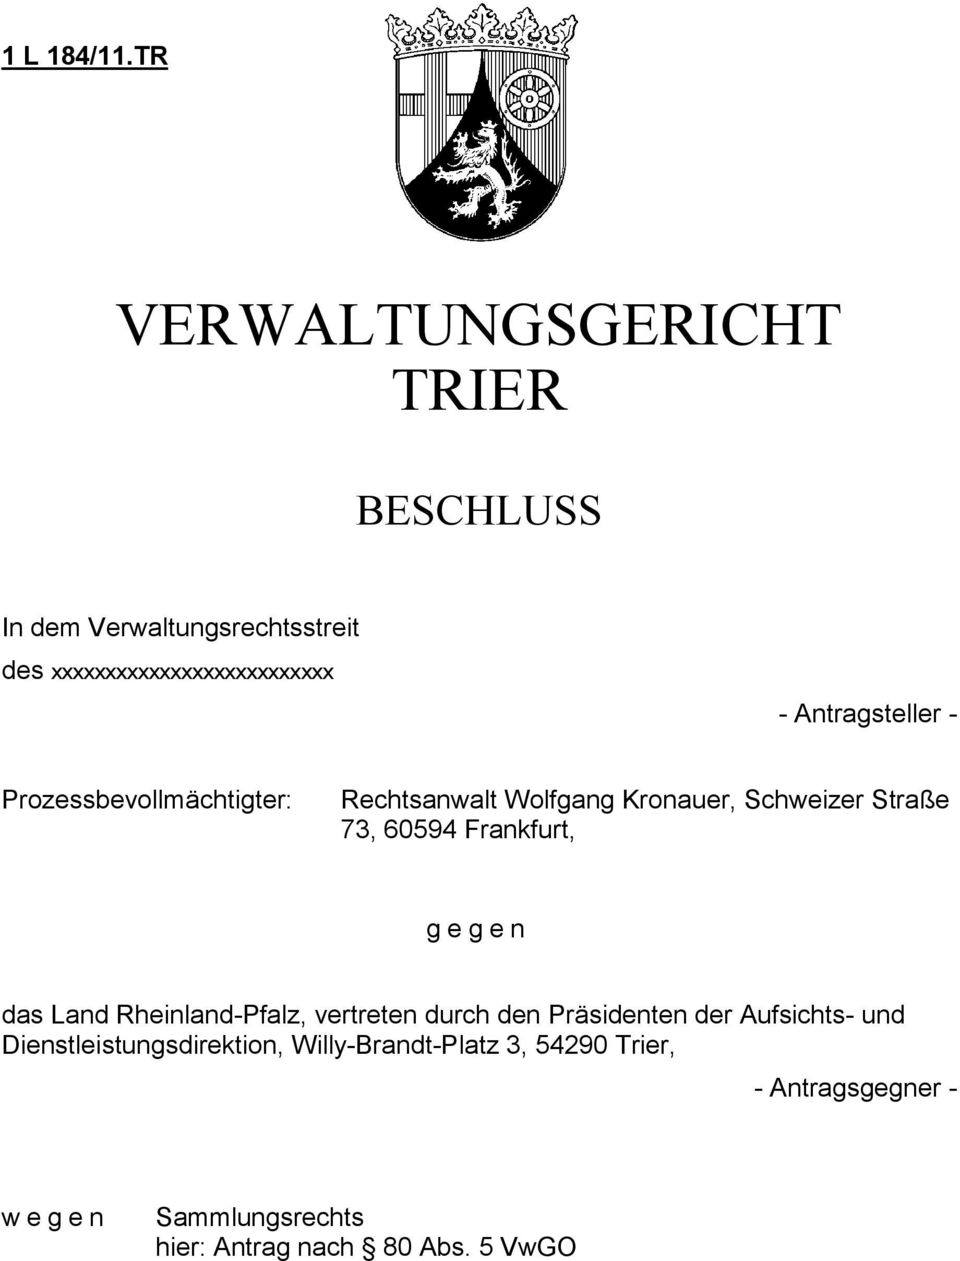 Antragsteller - Prozessbevollmächtigter: Rechtsanwalt Wolfgang Kronauer, Schweizer Straße 73, 60594 Frankfurt,